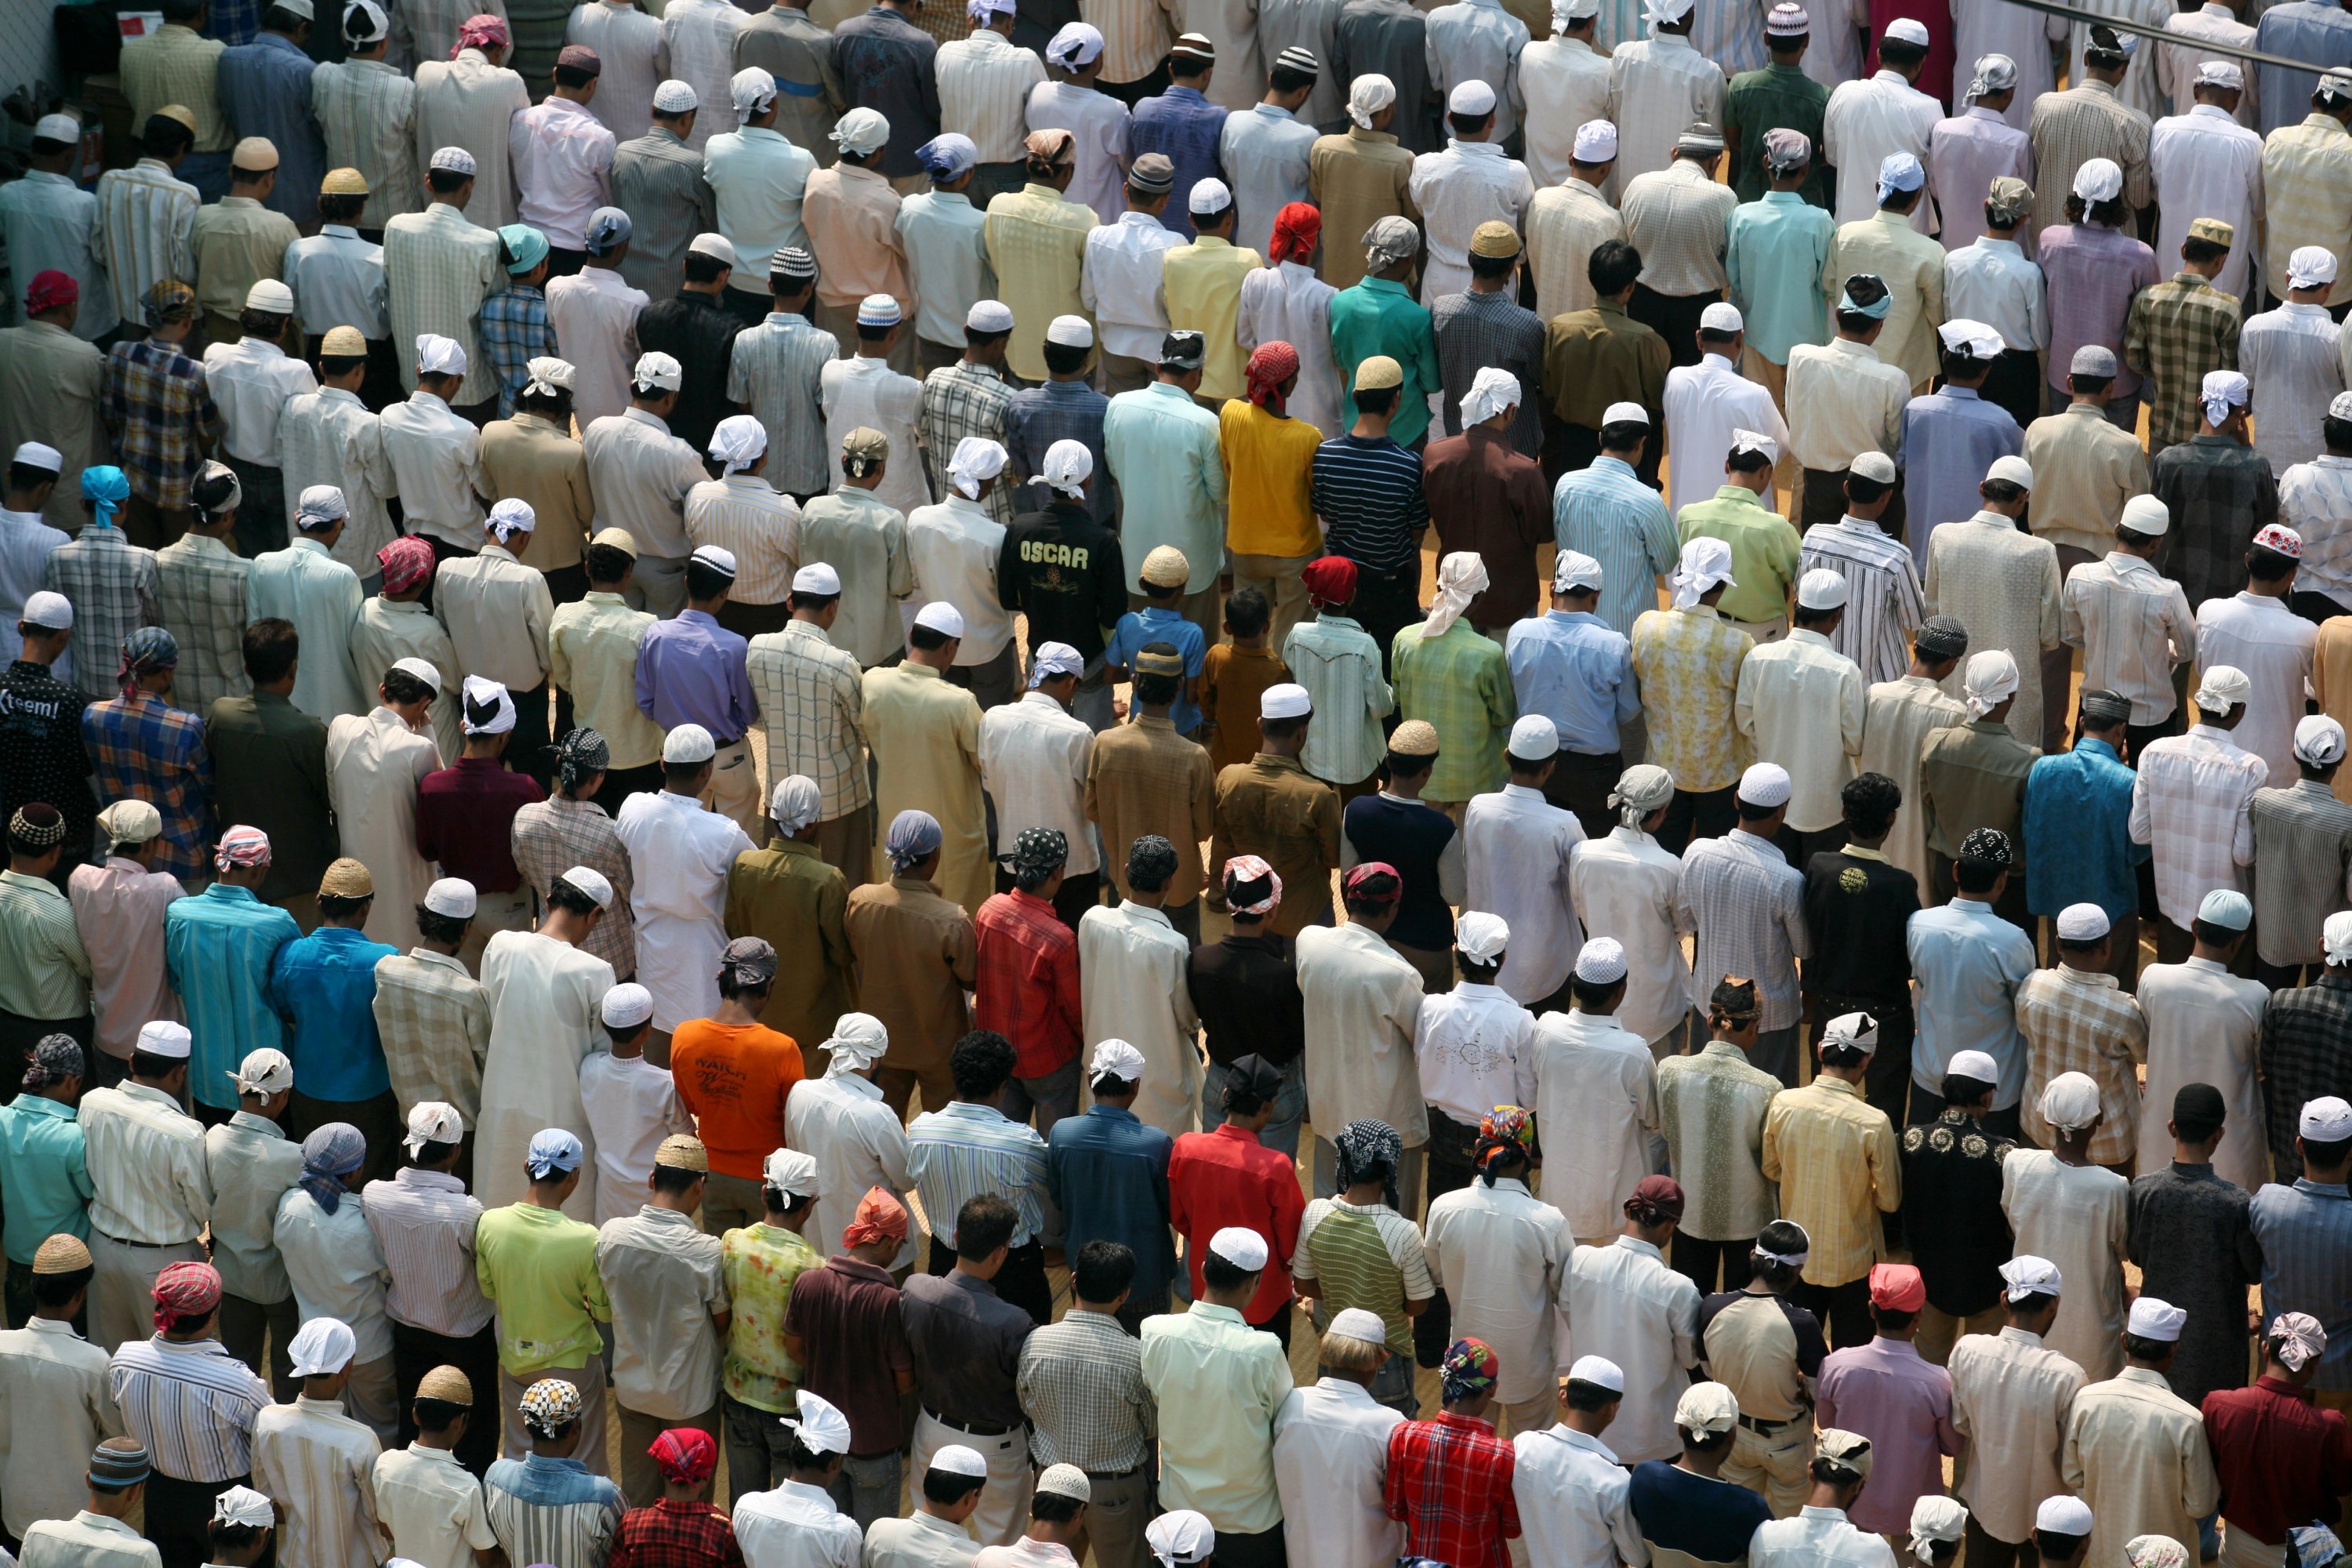 Ribuan umat Islam berkumpul untuk salat Idul Fitri (Idul Fitri) di Masjid Jama Old Delhi, Delhi, India, 10 Desember 2007.(Getty Images)